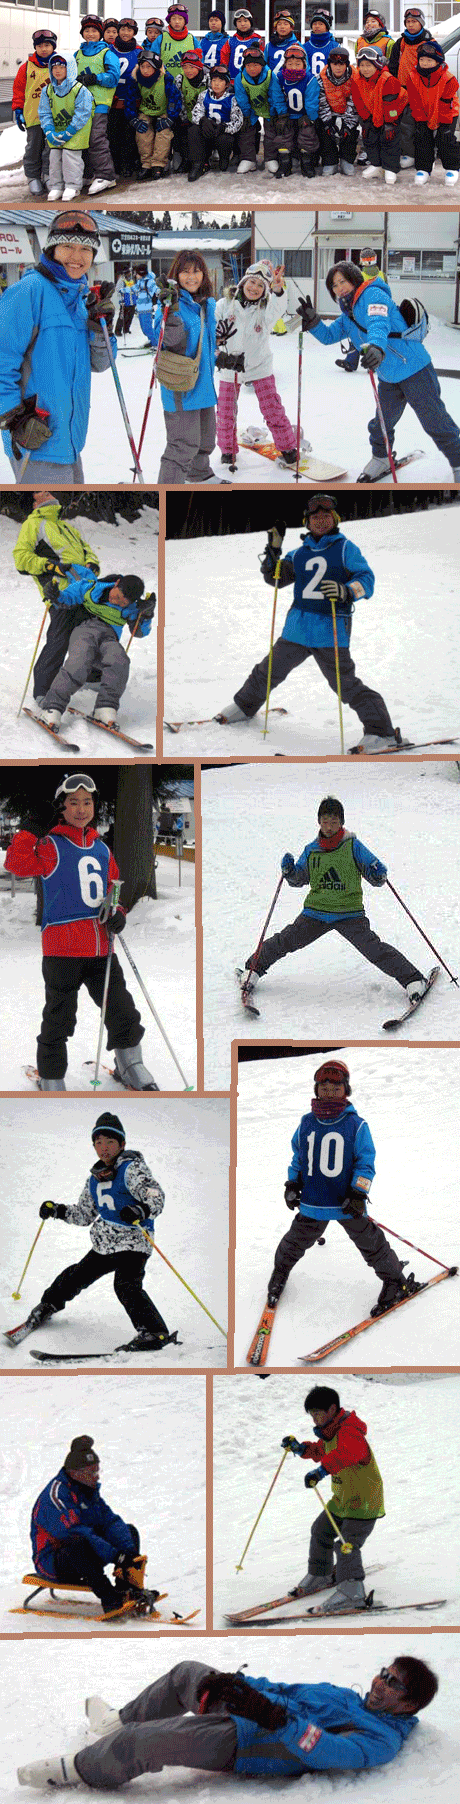 2014年1月25日スキー合宿